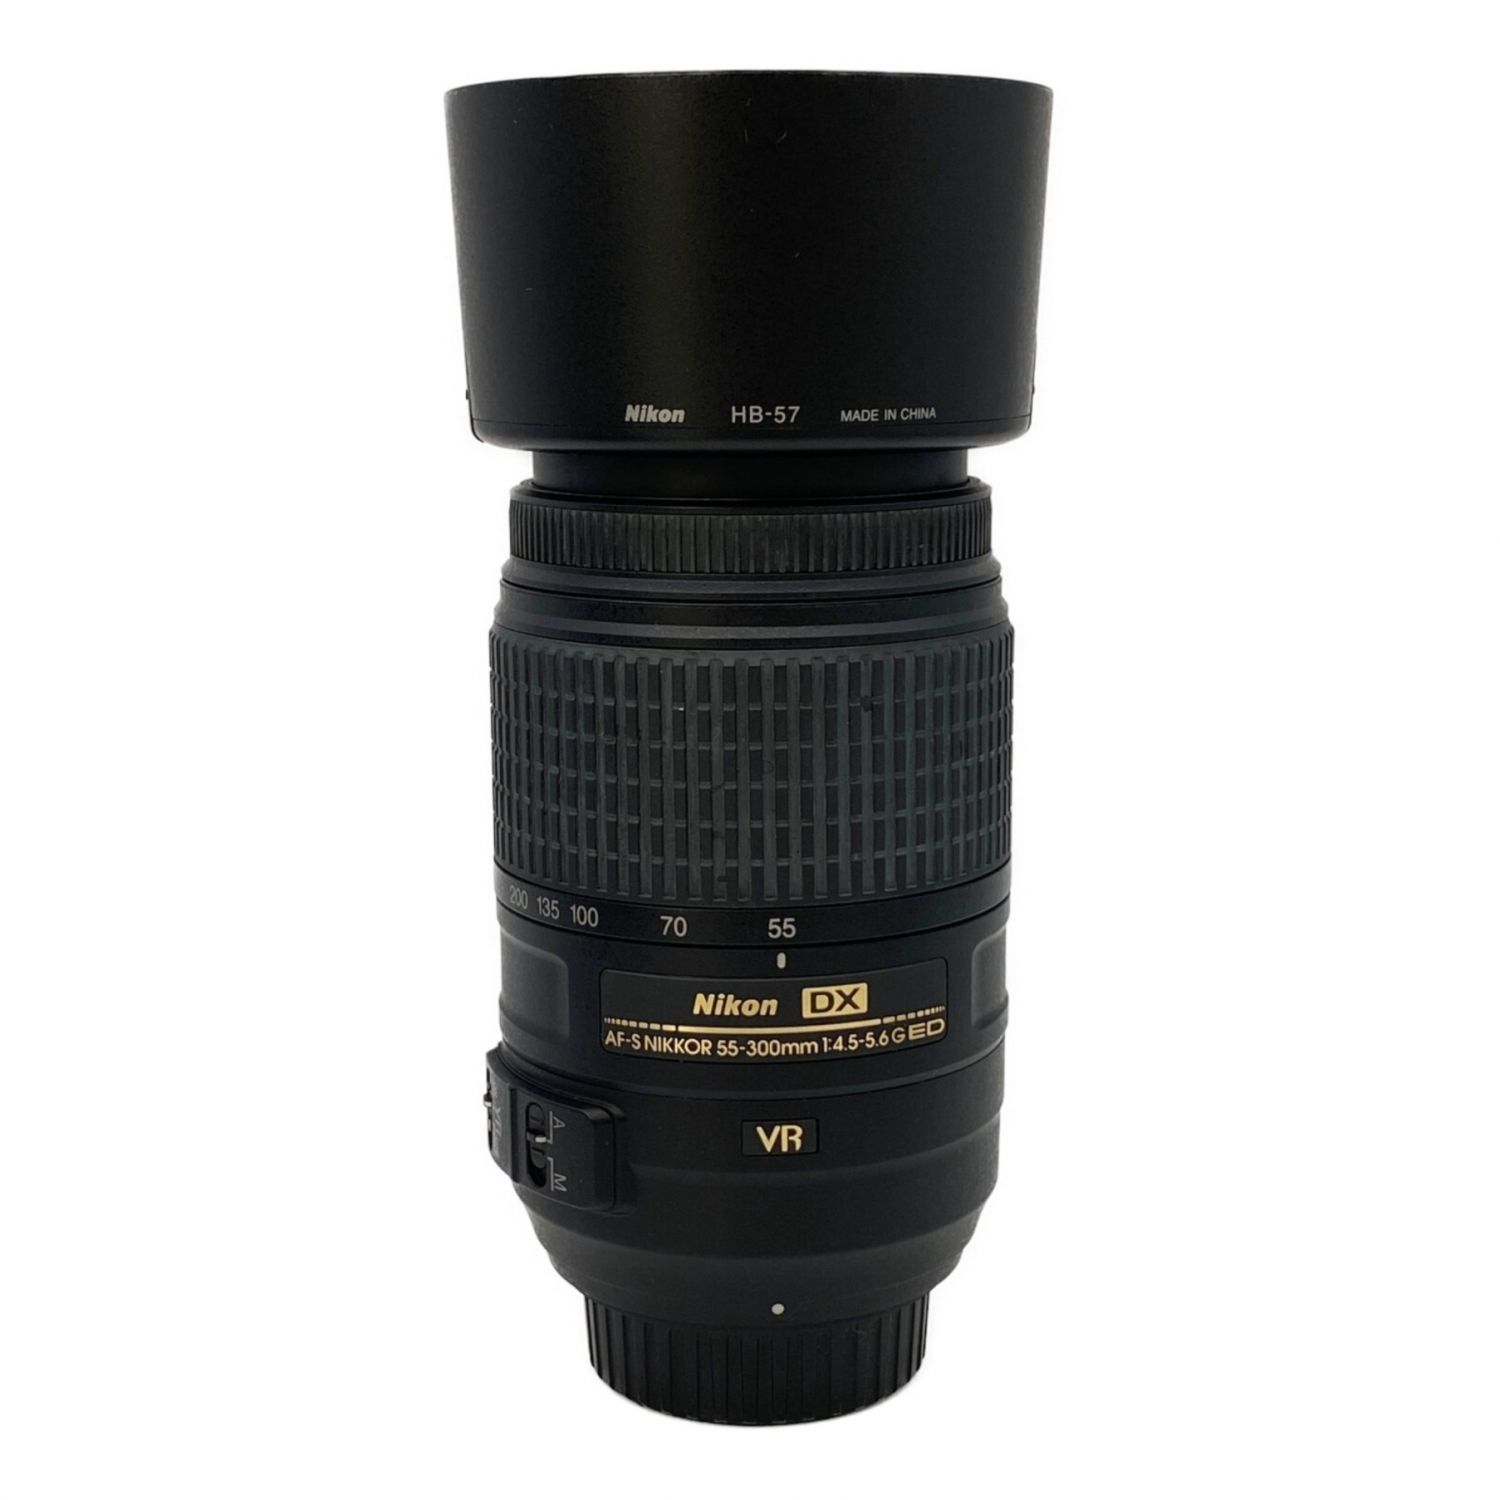 Nikon (ニコン) 望遠ズームレンズ AF-S DX NIKKOR 55-300mm f/4.5-5.6G